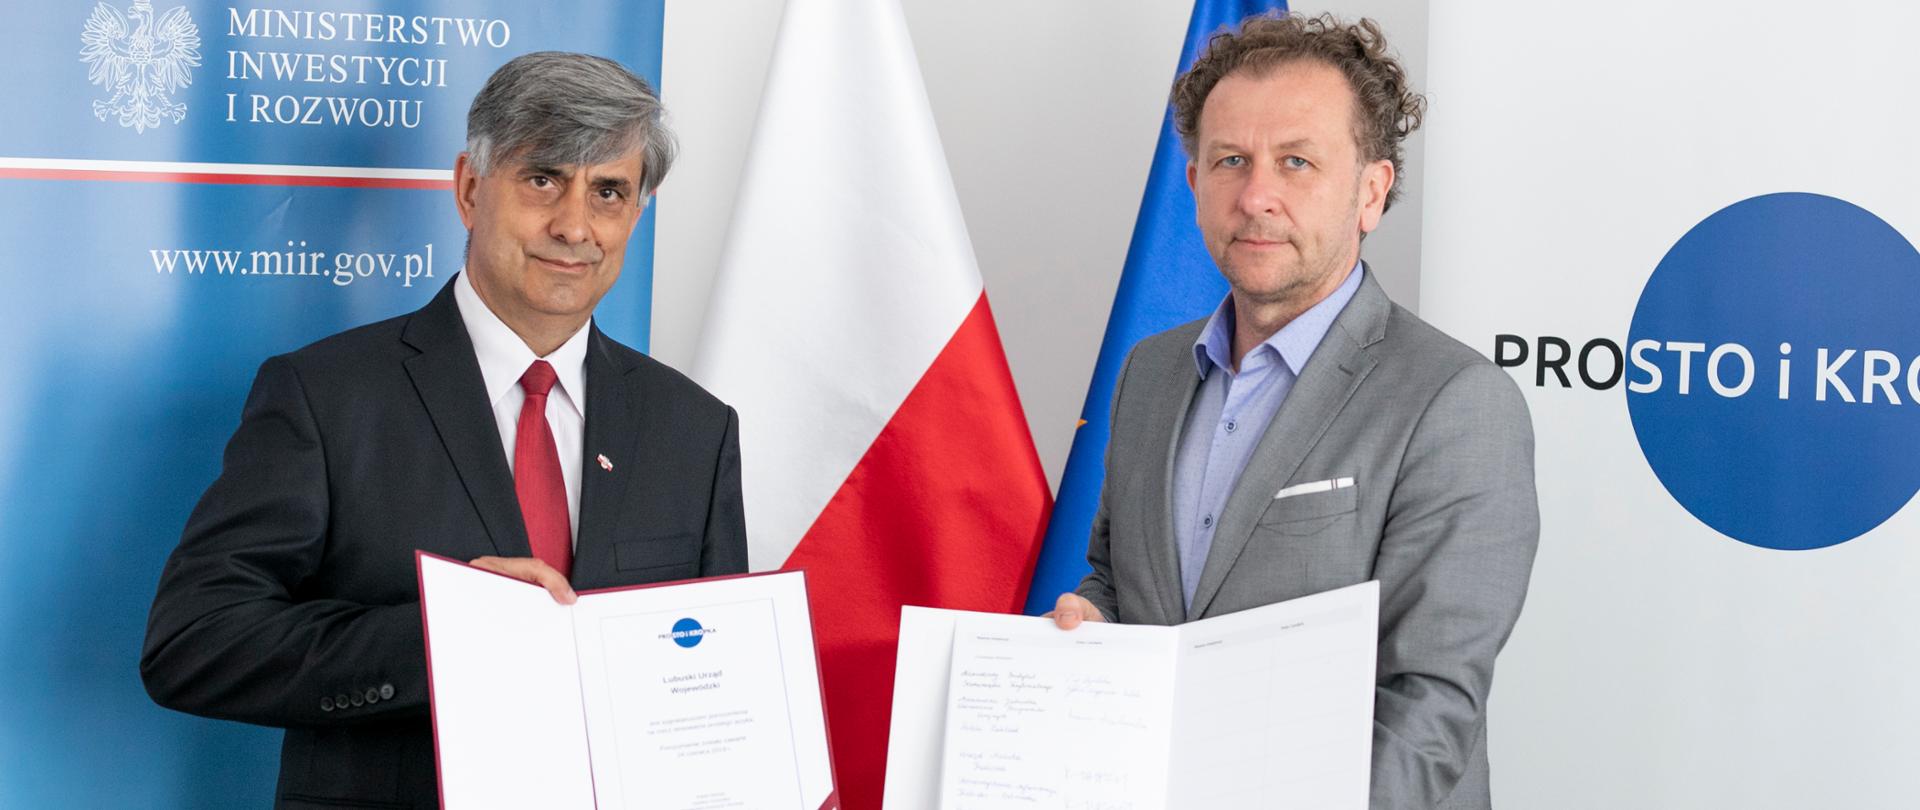 Dwóch mężczyzna stoi, w rękach trzymają podpisane umowy, za nimi znajduję się flaga Polska i Unii Europejskiej. Oraz rozkładane dwie ścianki z napisem "Prosto i Kropka" oraz "Ministerstwo Inwestycji i Rozwoju". 